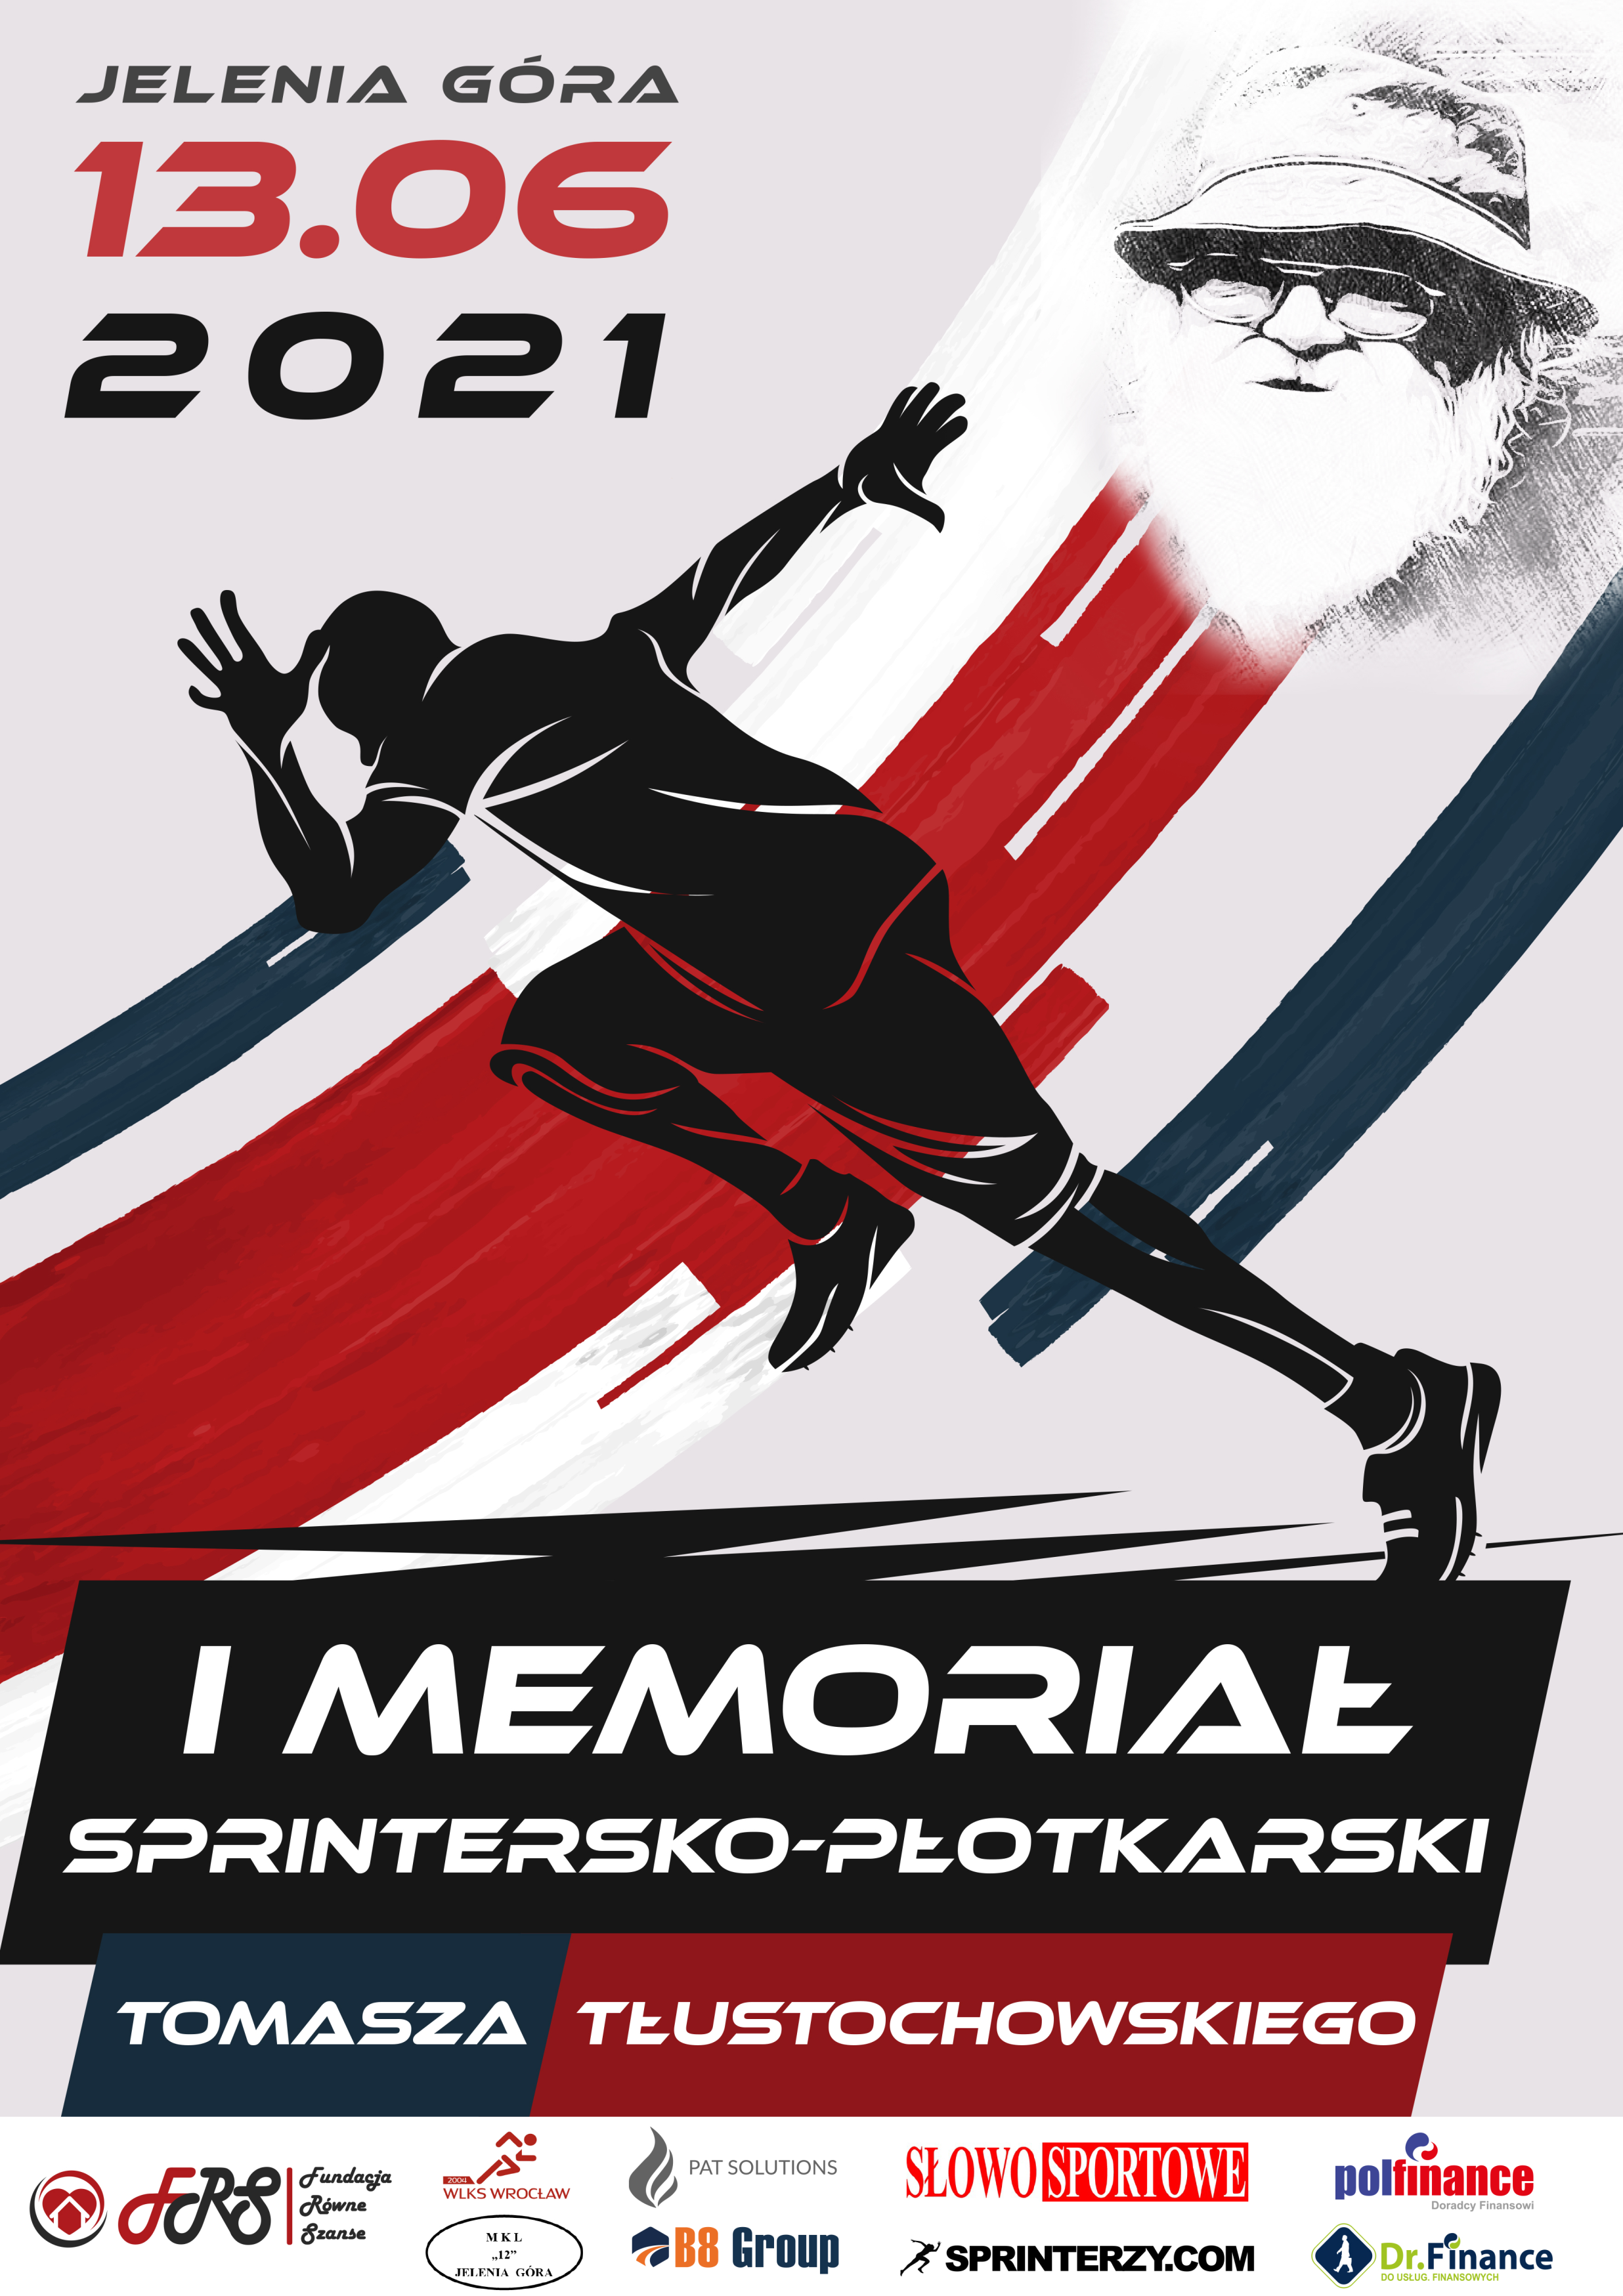 Memoriał Tłustochowskiego 13.06.2021